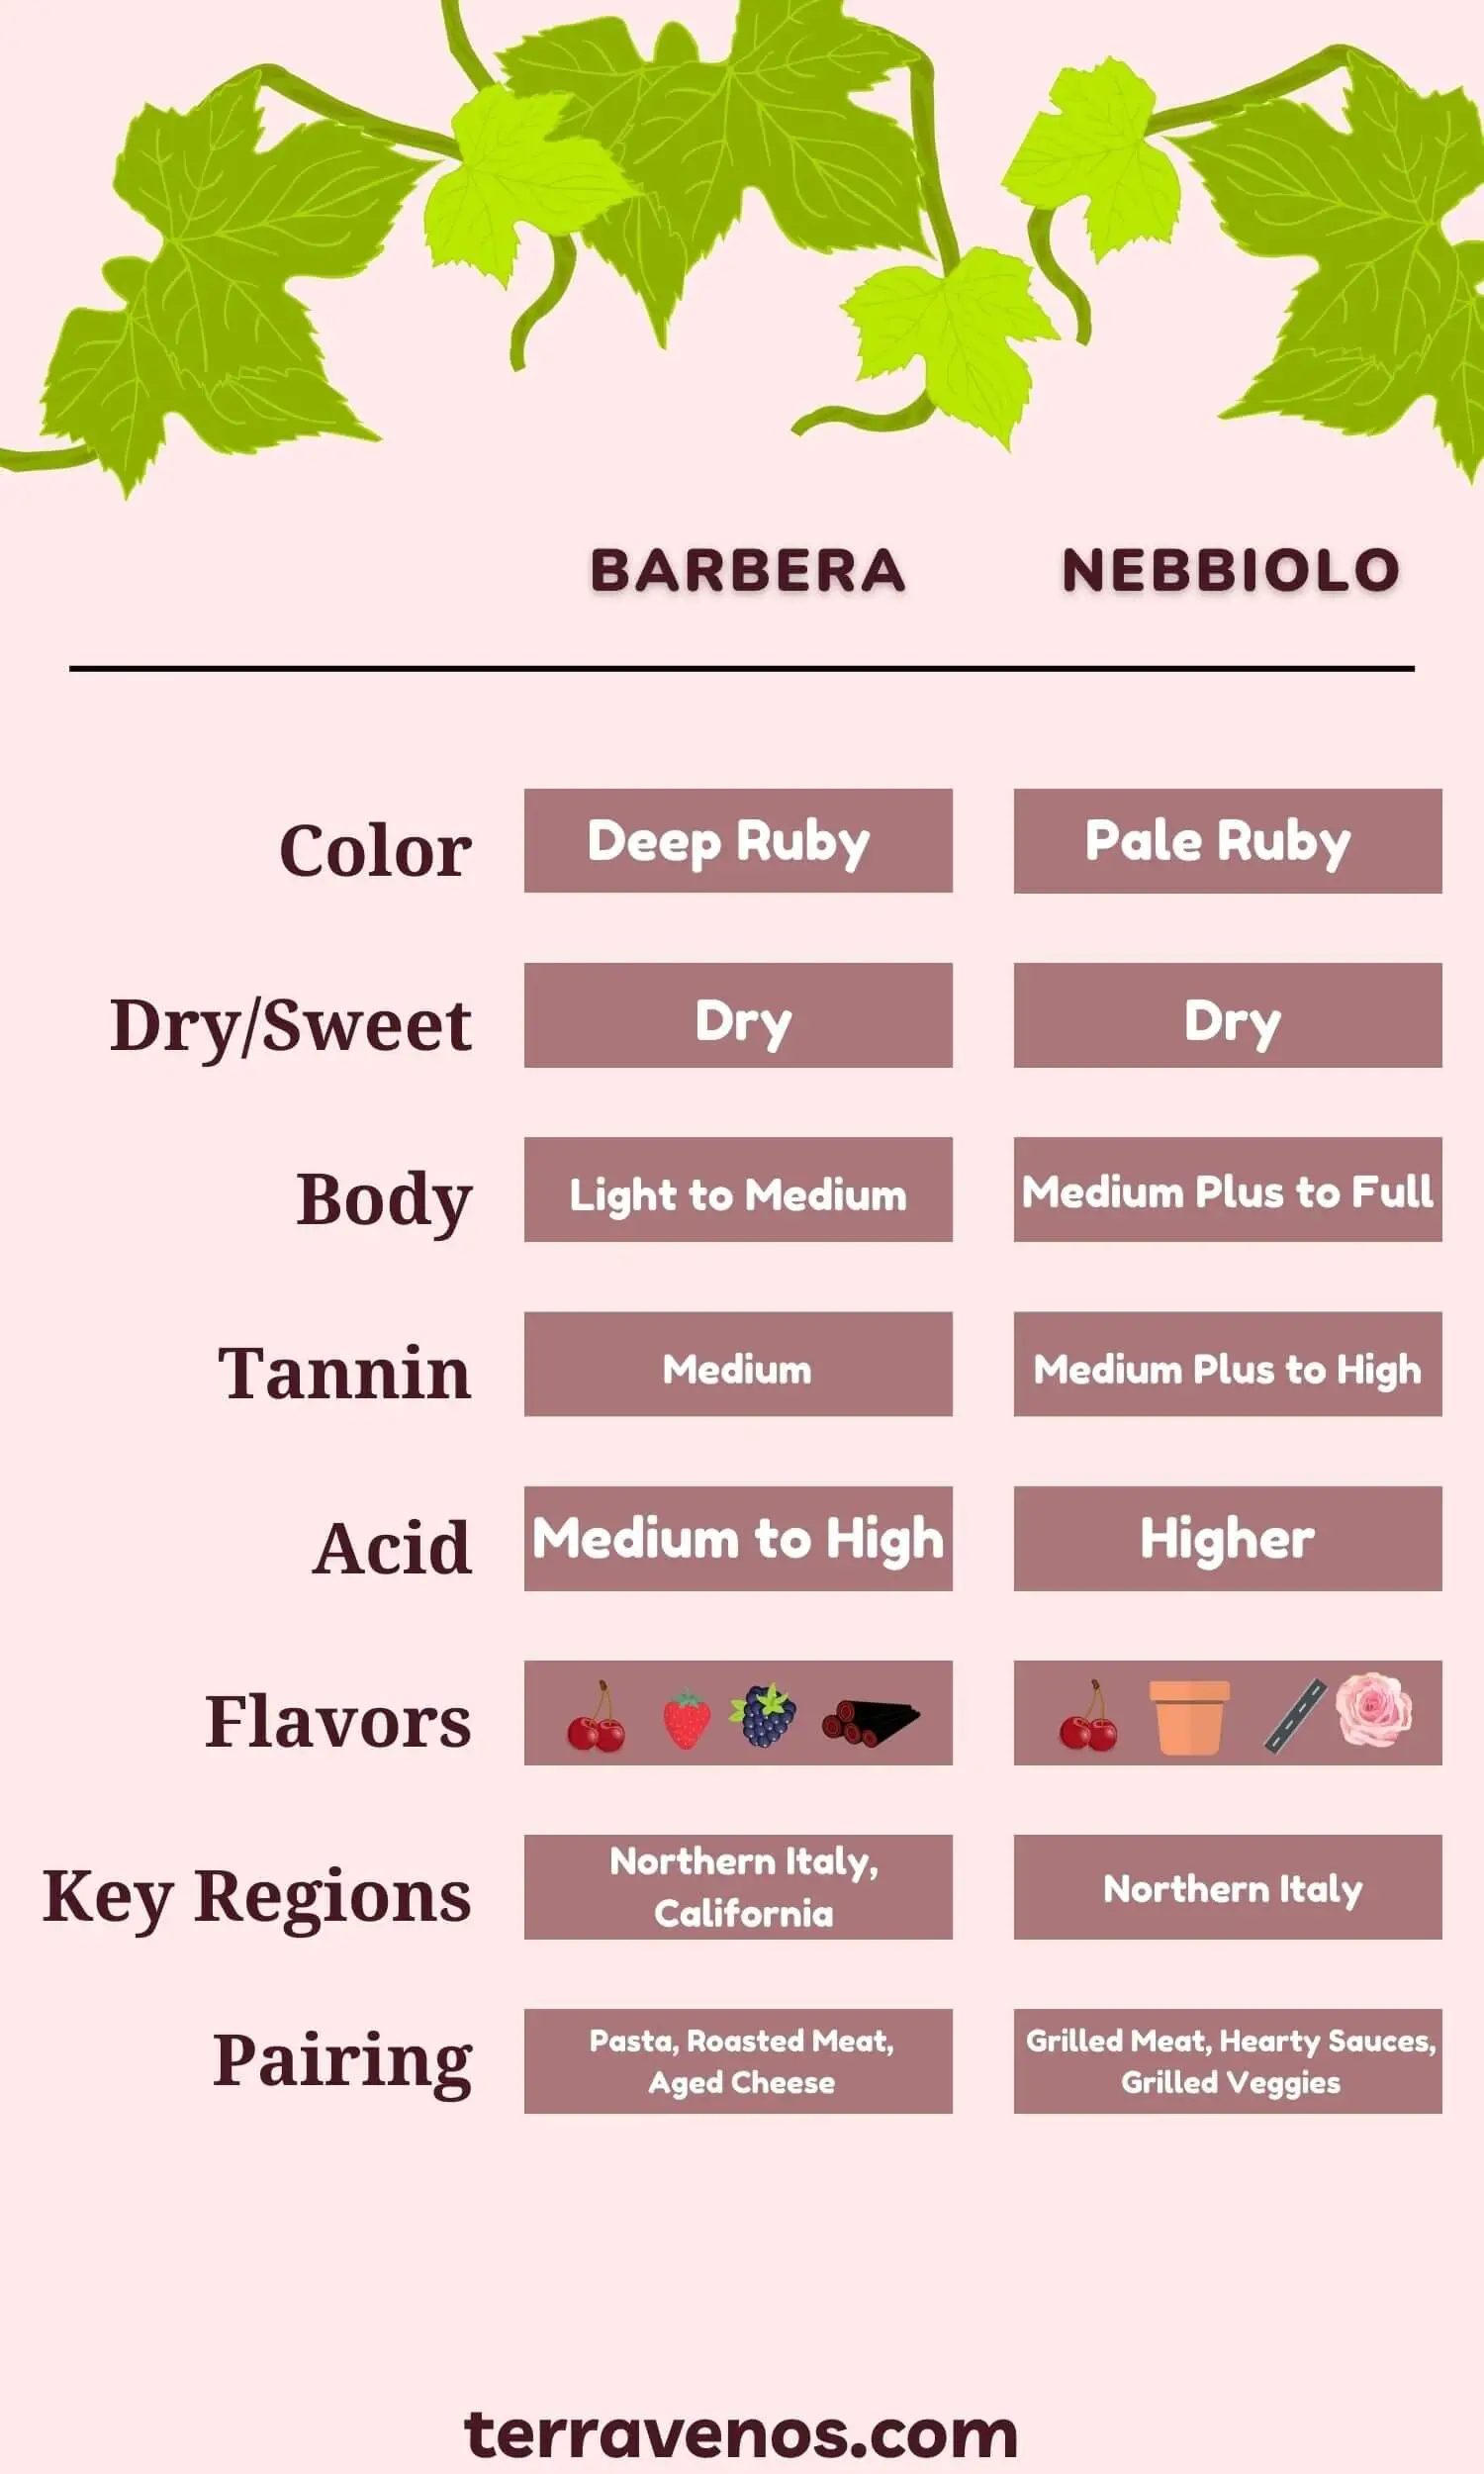 nebbiolo vs barbera infographic